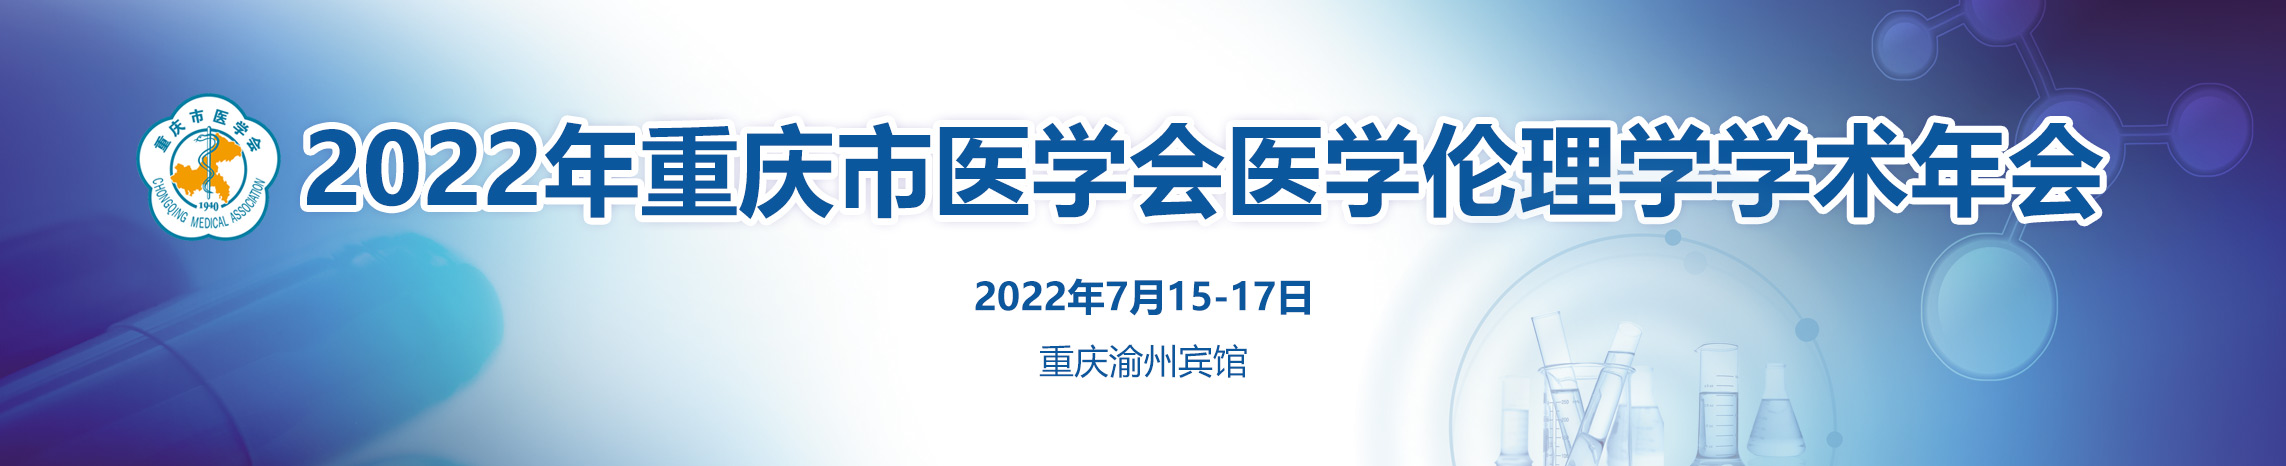 2022年重庆市医学会医学伦理学学术年会